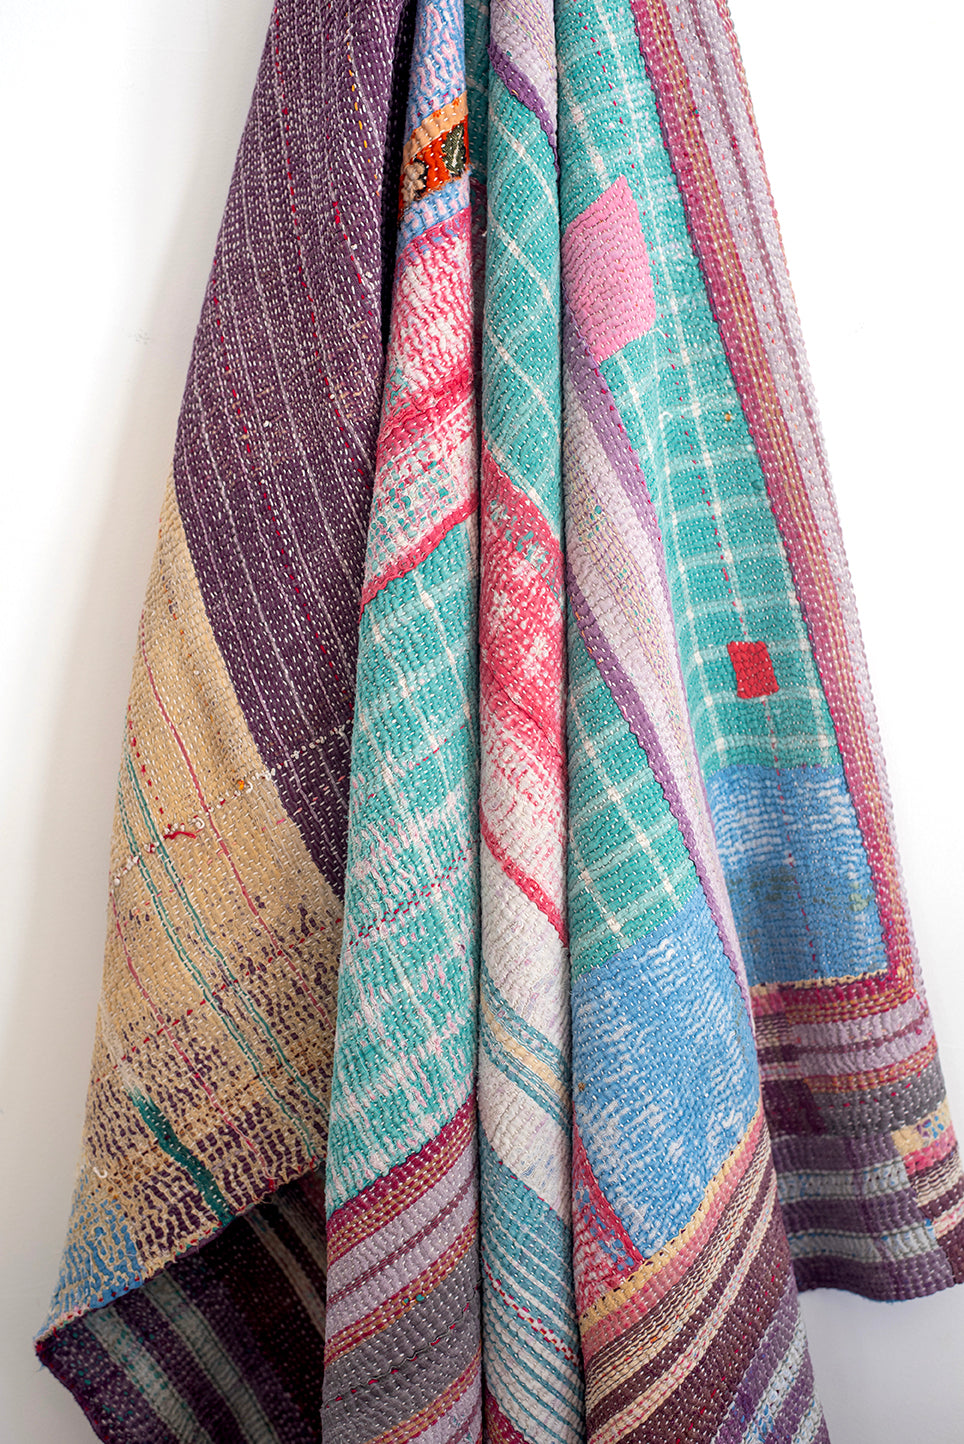 The Dogwood Quilt – Vintage Kantha Quilt